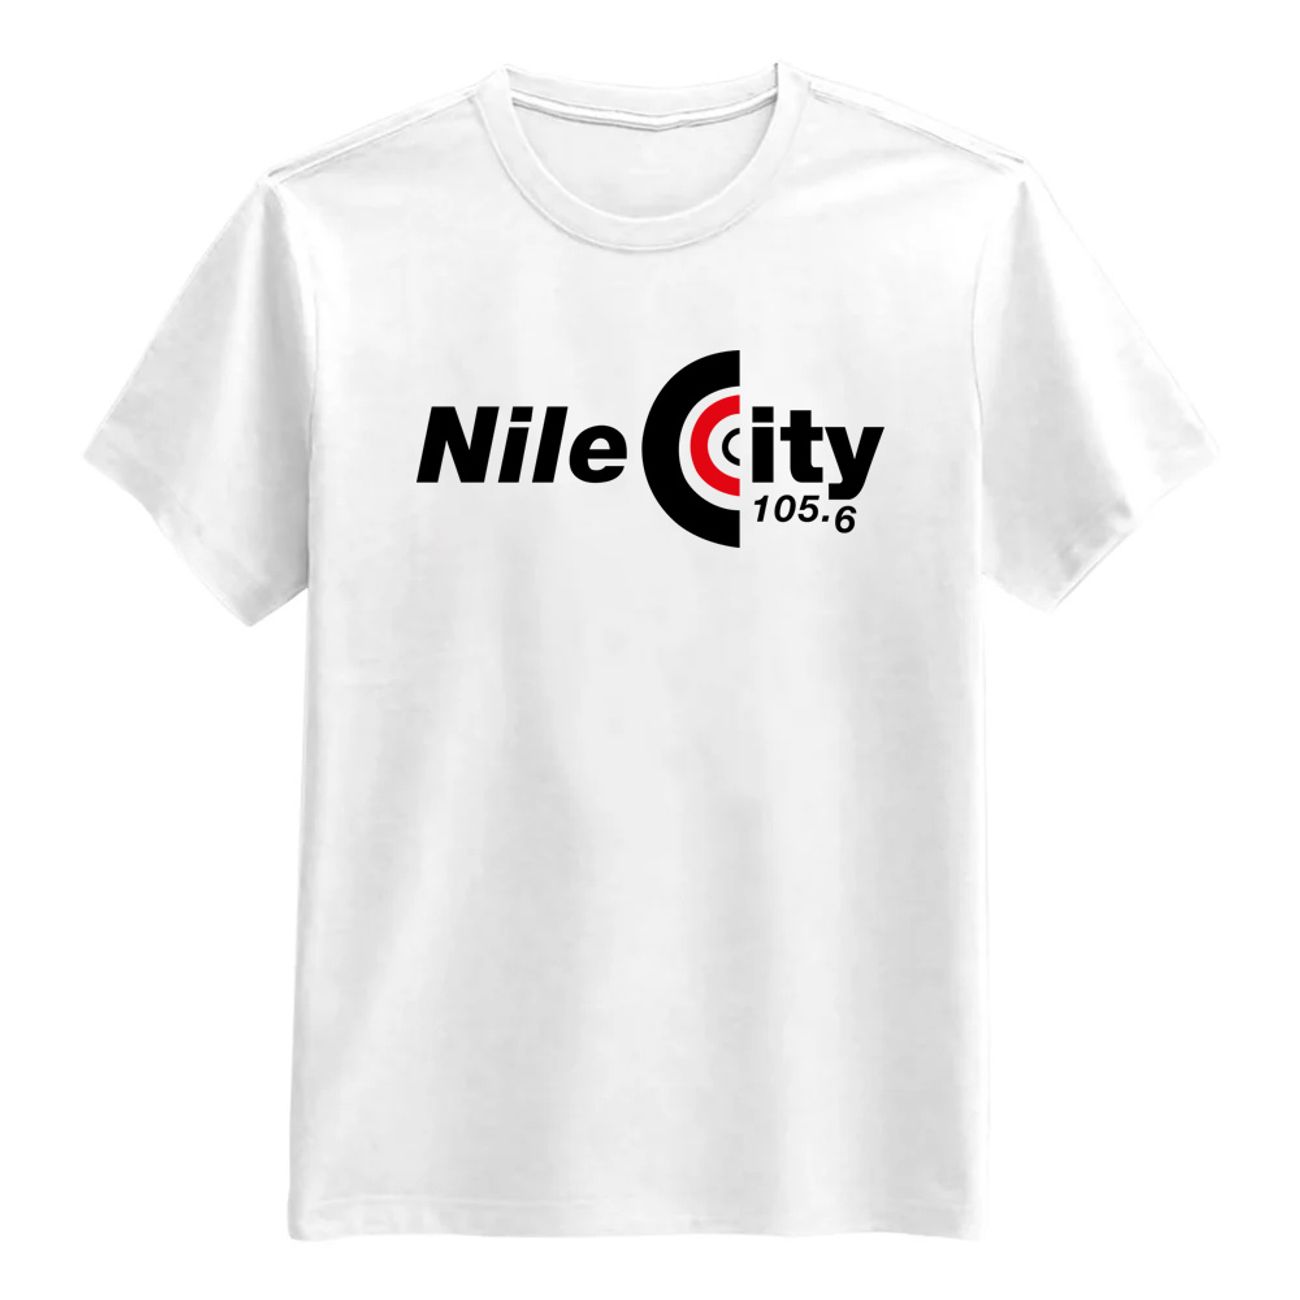 nile-city-t-shirt--1